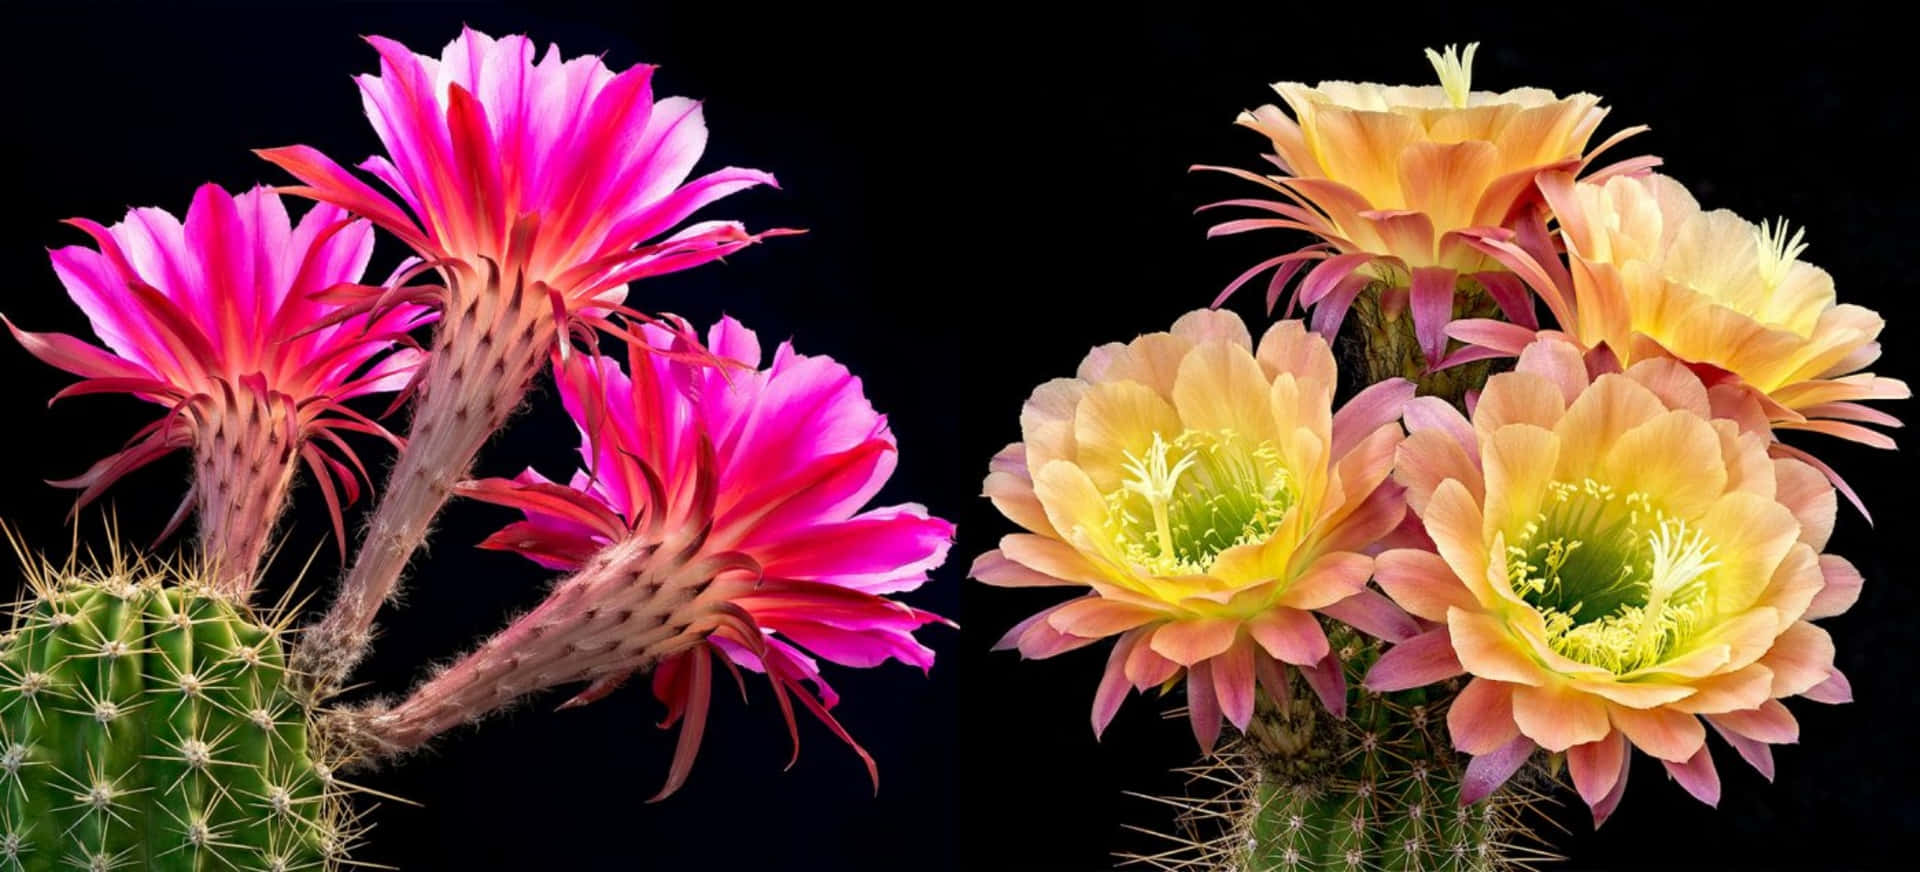 Tvåkaktusväxter Med Blommor I Olika Färger